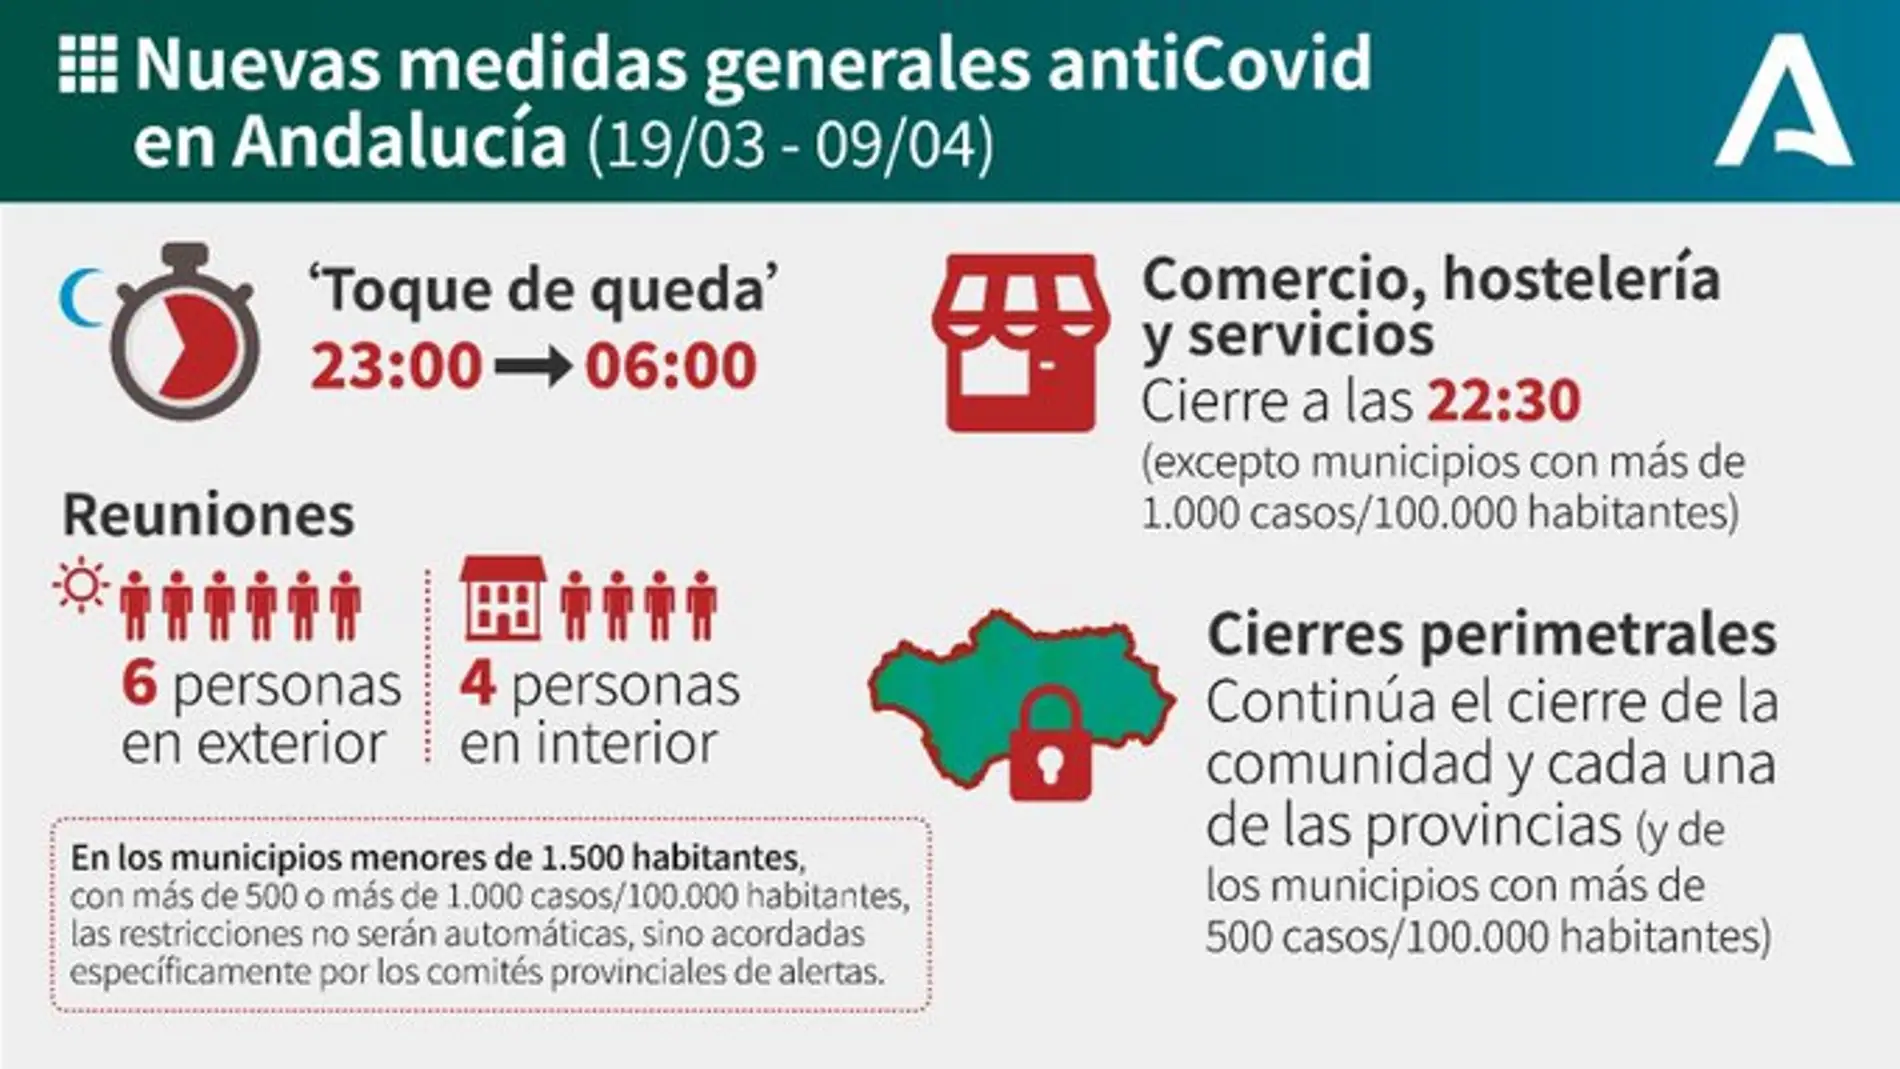 Gráfico con el resumen de las nuevas medidas antiCovid en Andalucía